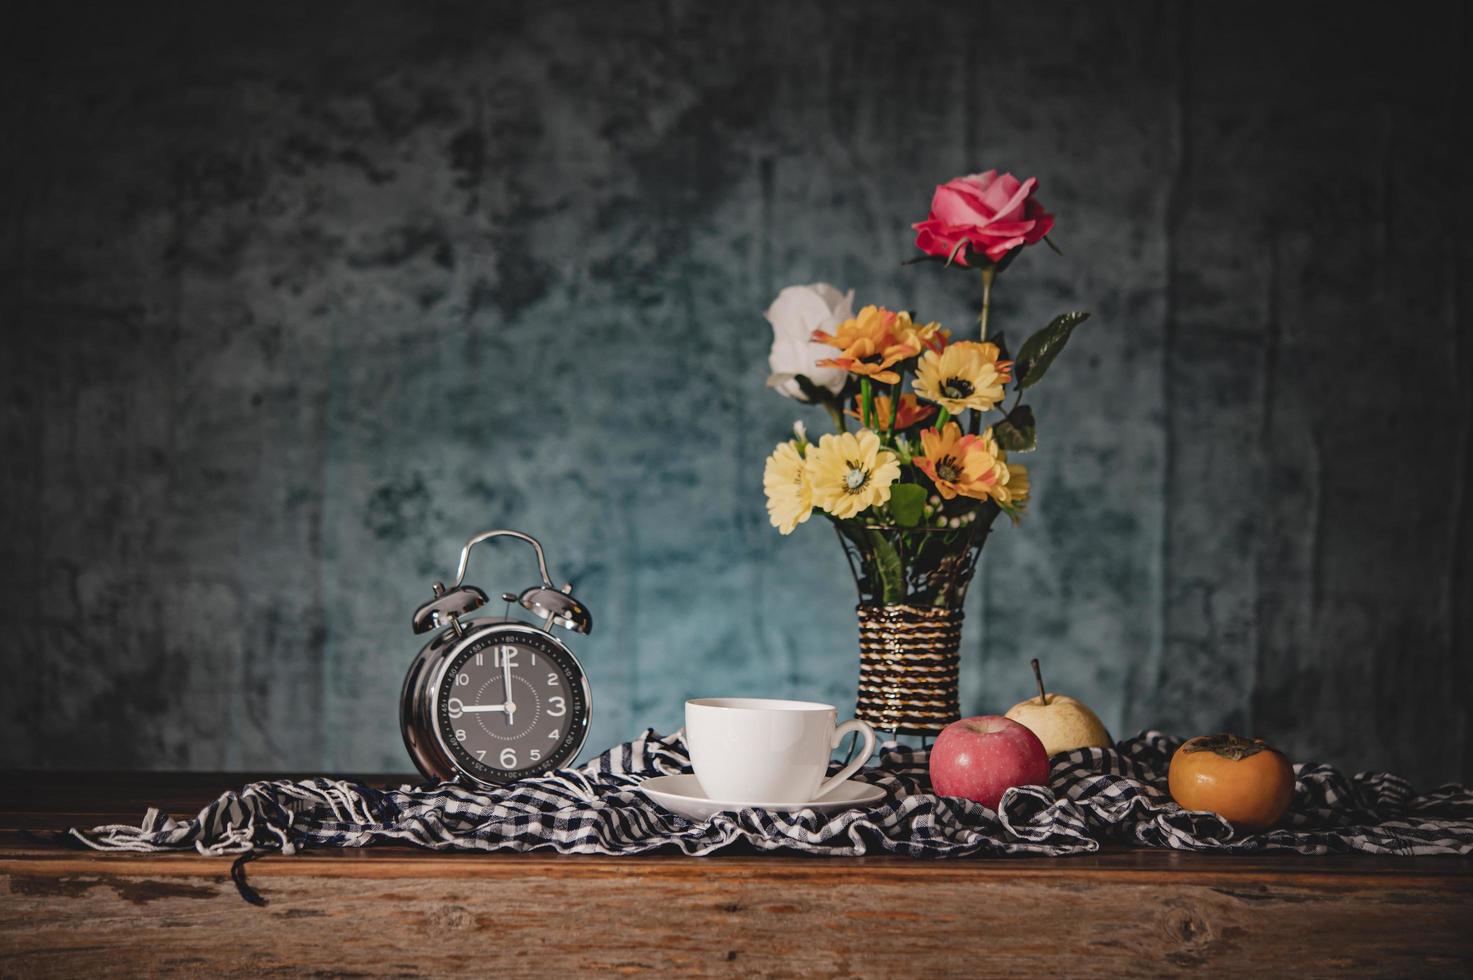 natureza morta com vasos, flores, frutas, xícaras de café e relógios foto